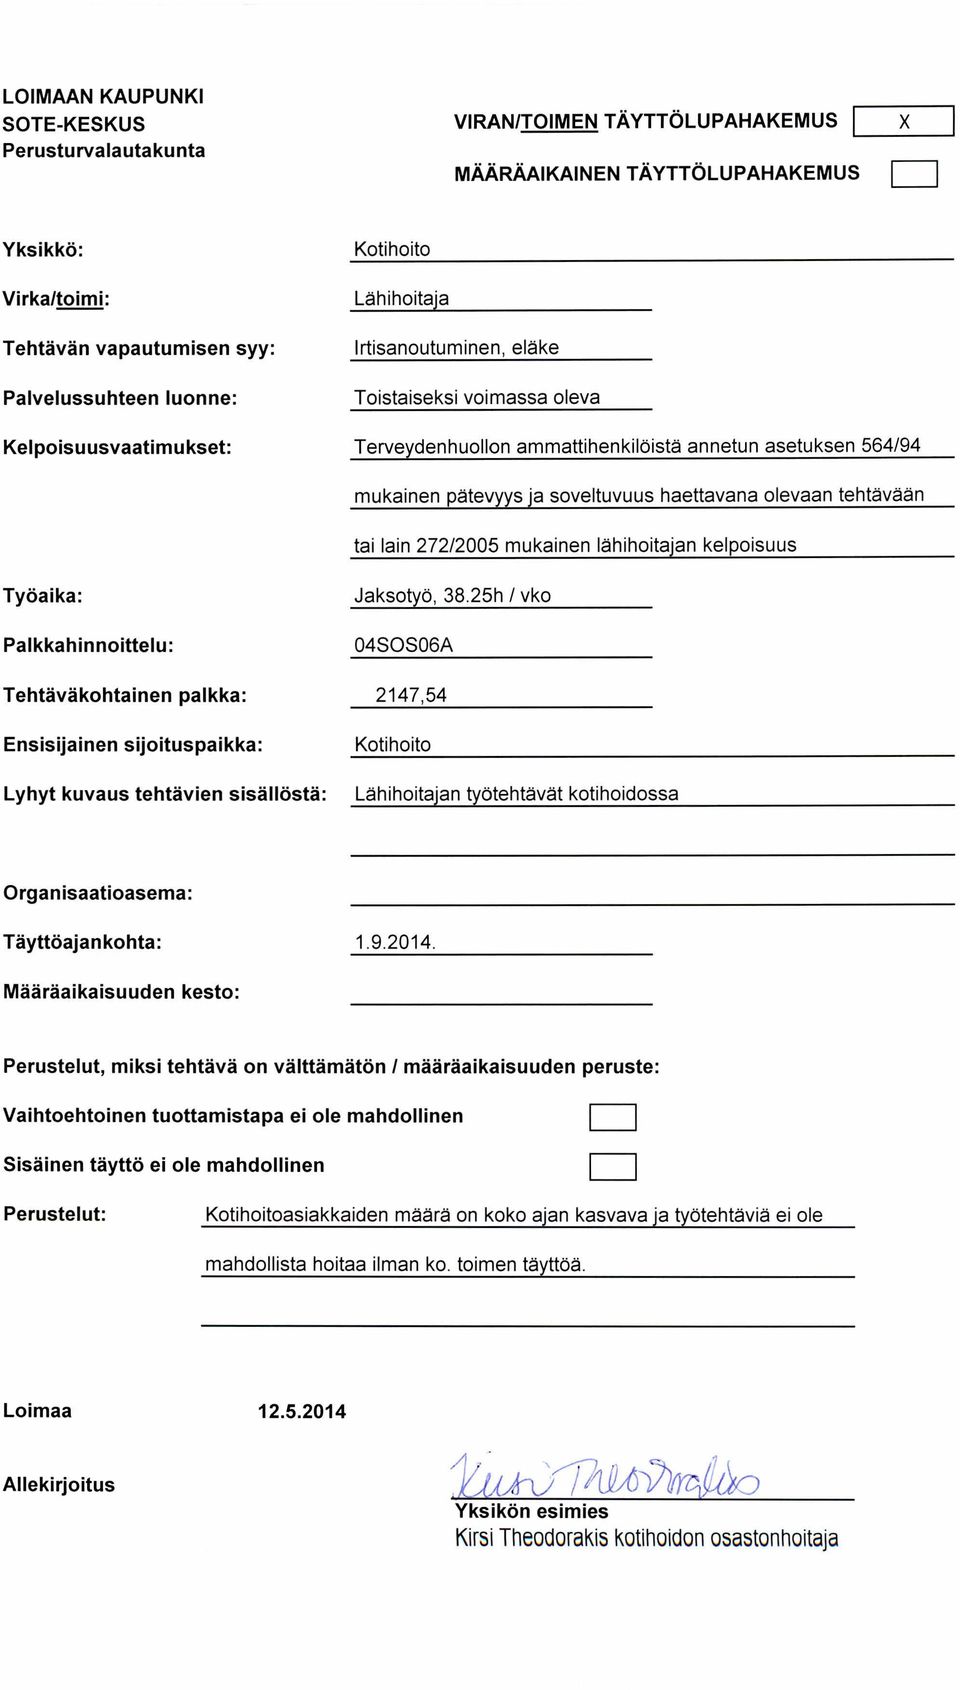 Työaika: Jaksotyö, 38.25h / vko 04SOS06A Tehtäväkohtainen palkka : 2147,54 Ensisijainen sijoituspaikka : Kotihoito Lyhyt kuvaus tehtävien sisällöstä : Lähihoitajan työtehtävät kotihoidossa 1.9.2014.